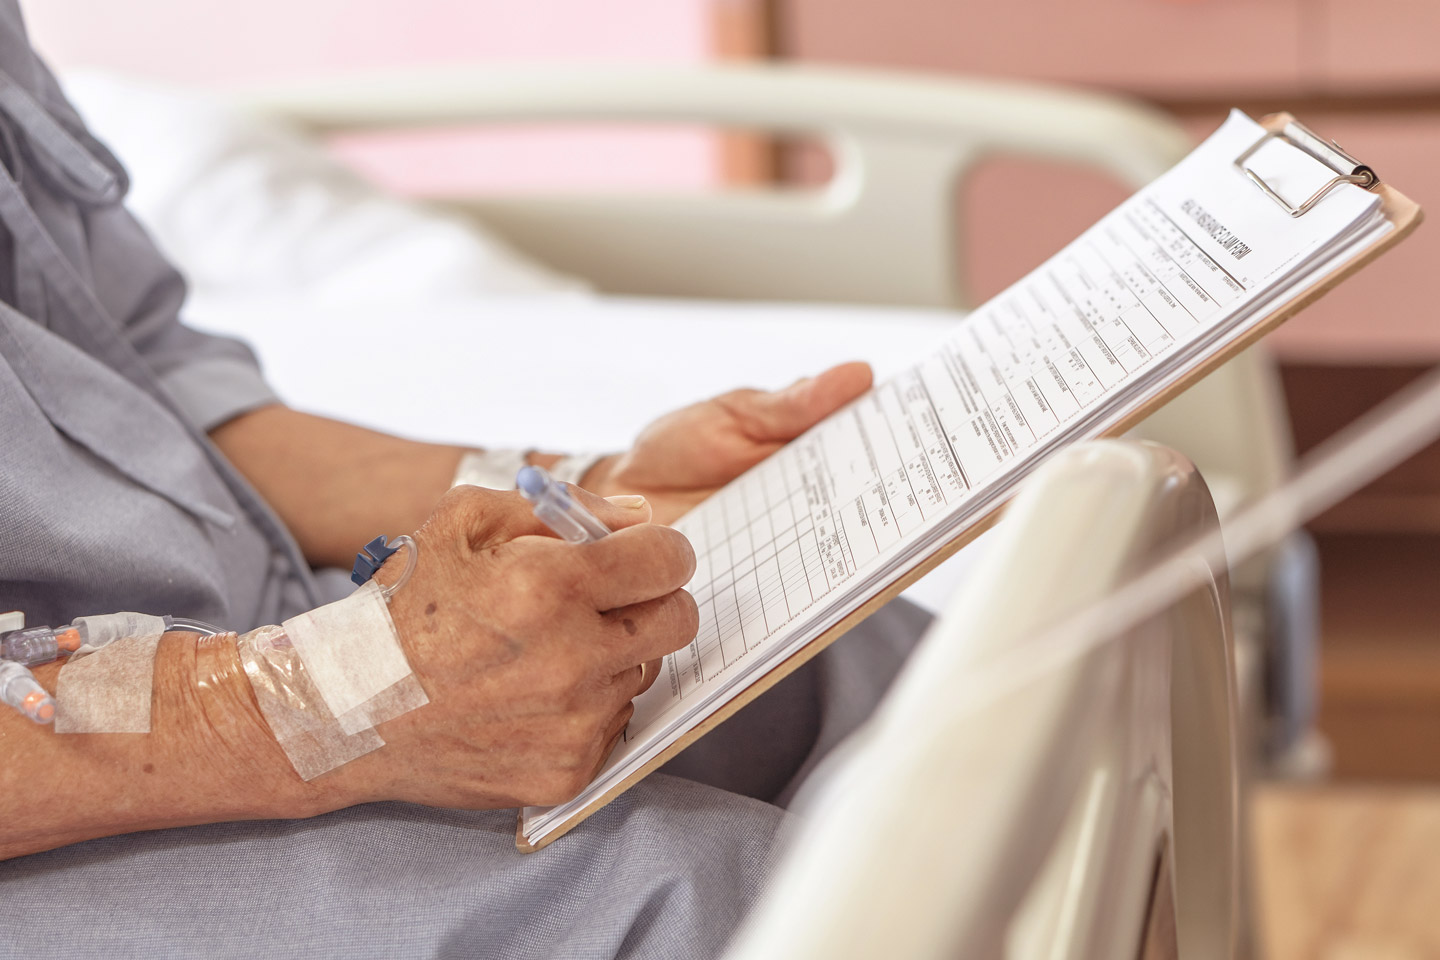 Foto: Ein Patient mit Kanülen an der rechten Hand füllt ein Formular aus. Das Formular ist auf ein Klemmbrett gespannt. 